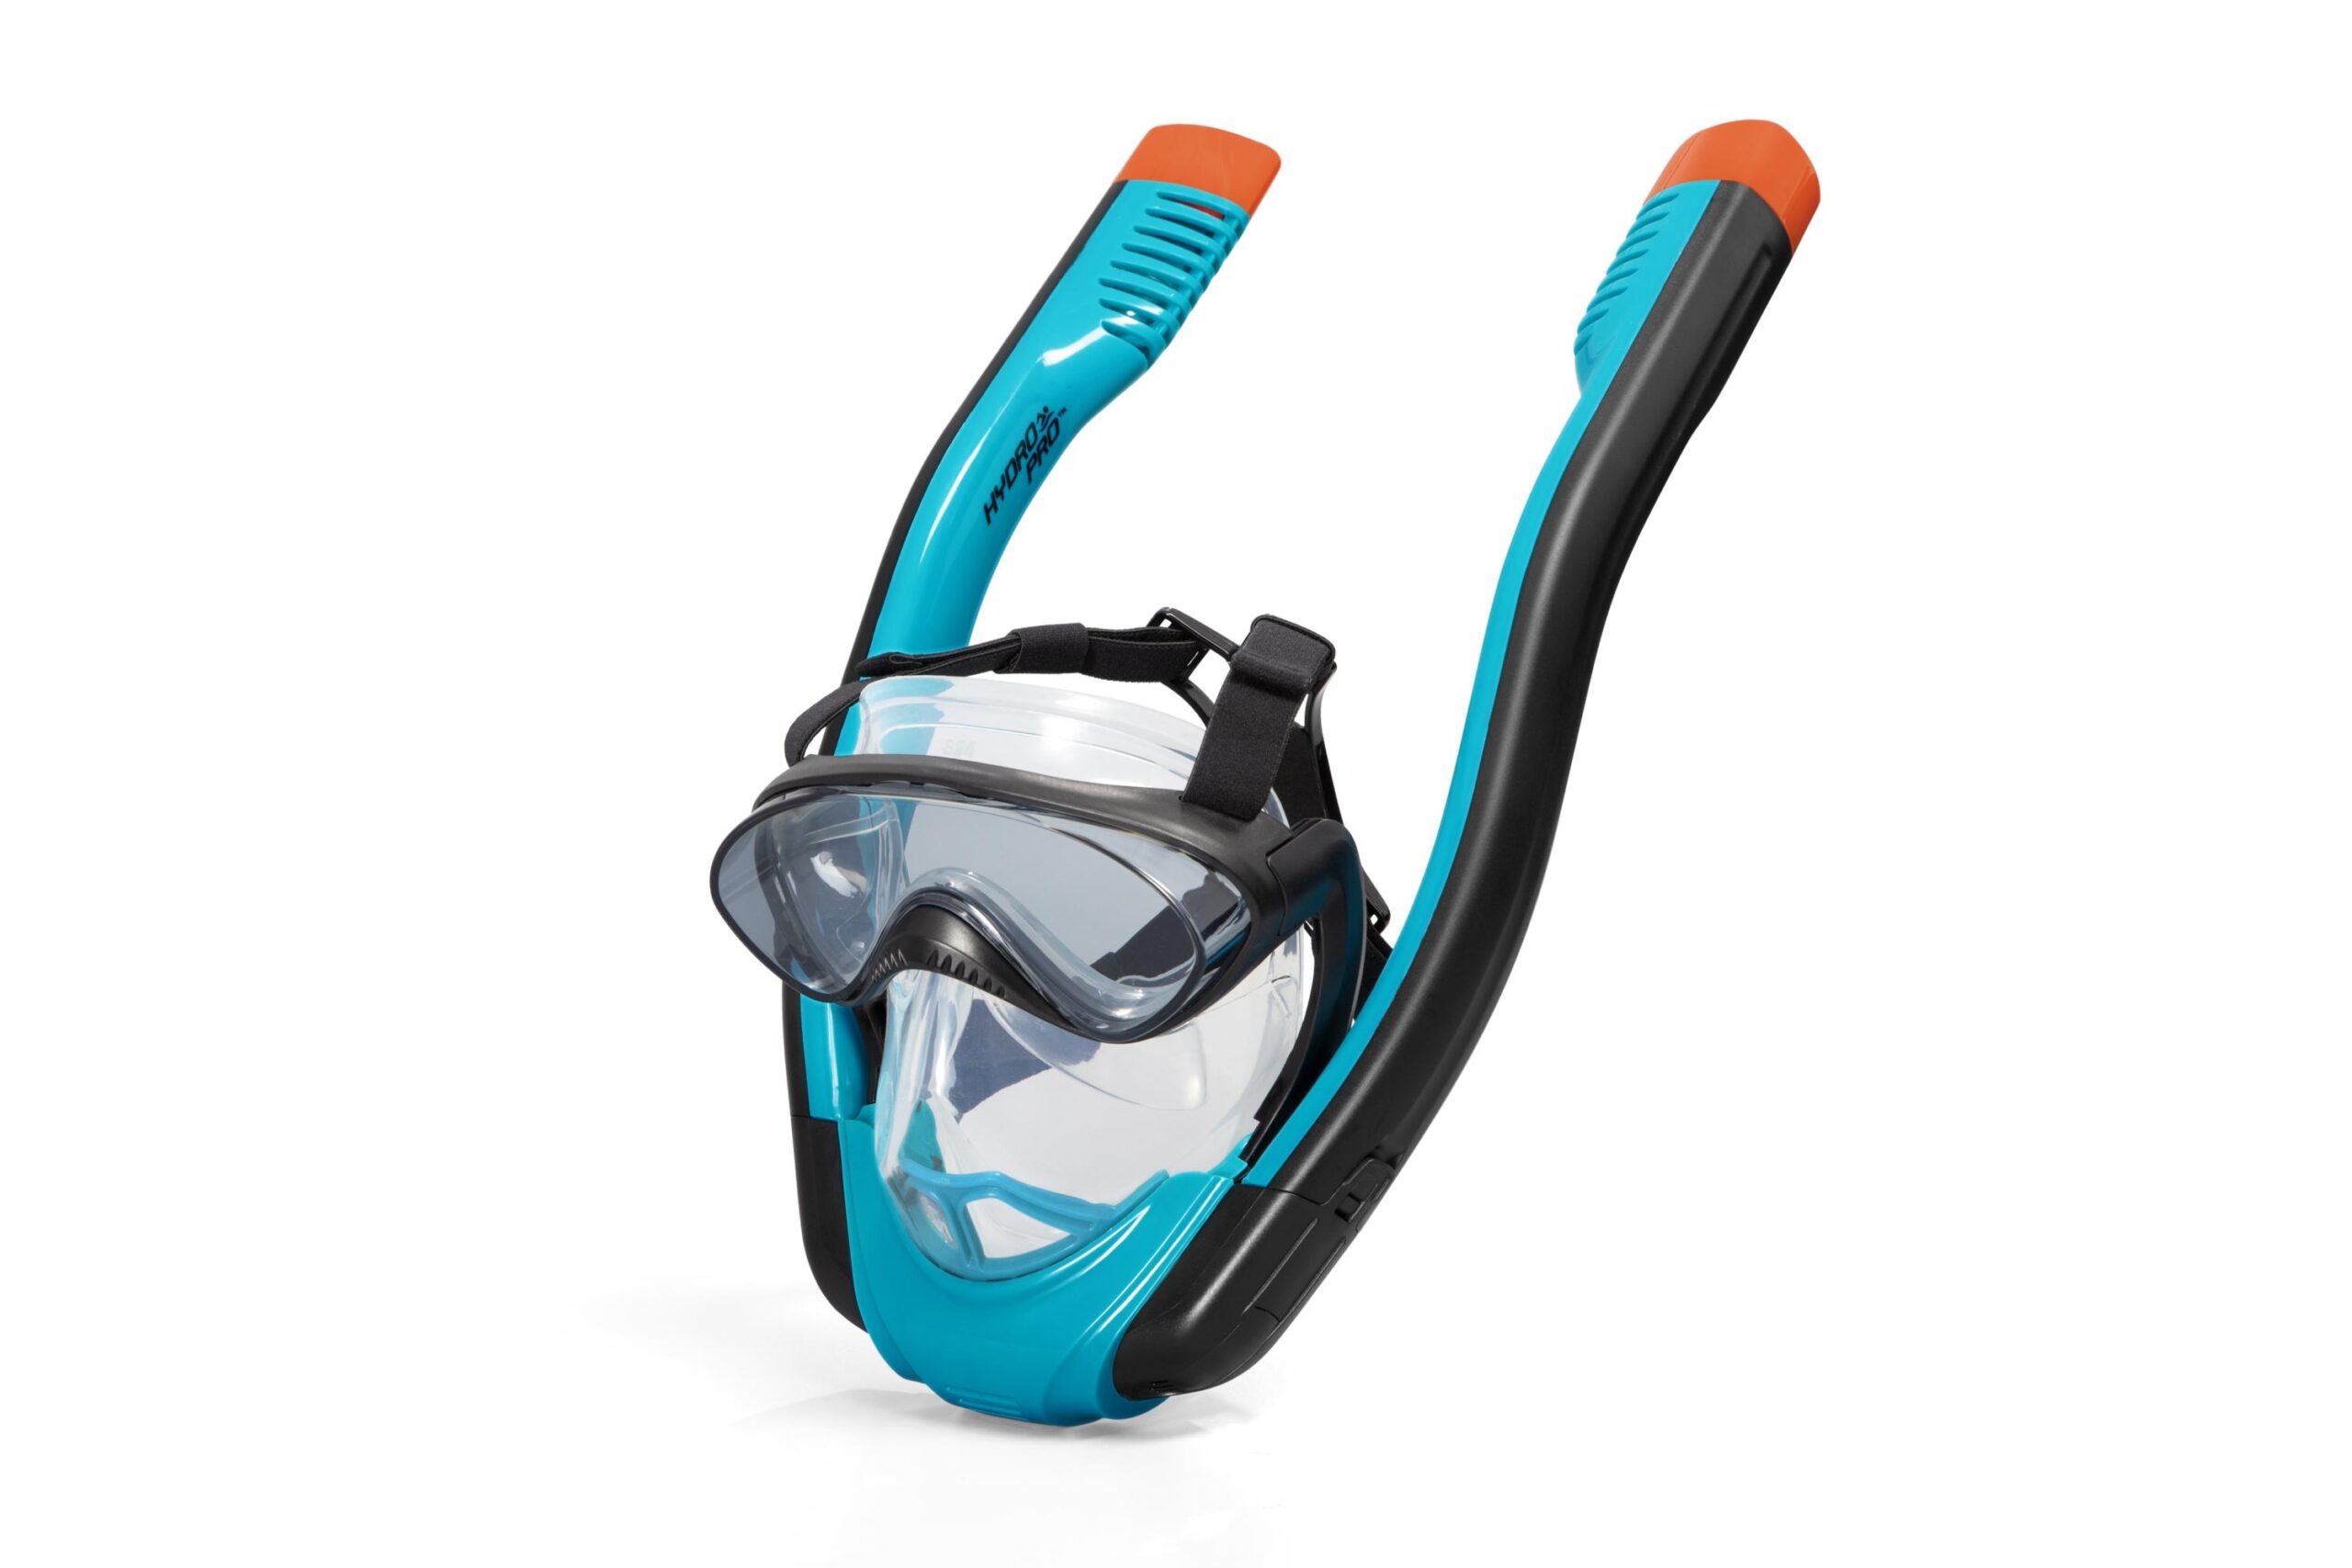 Bestway Hydro-Pro Flowtech Snorkel Masker S/M